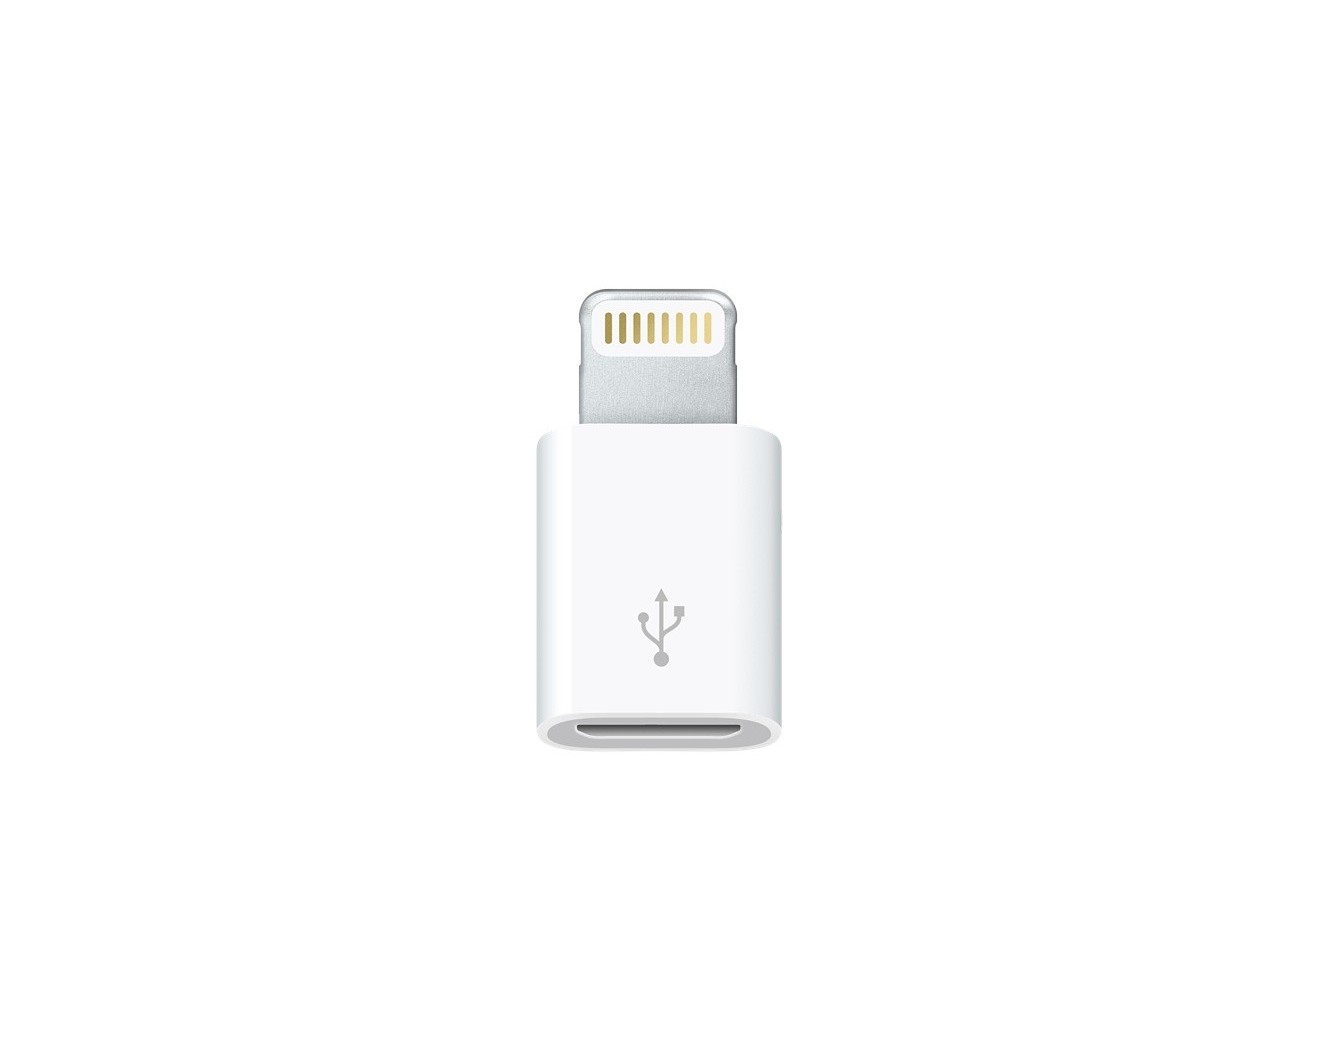 Адаптер Apple Lightning to Micro USB Adapter